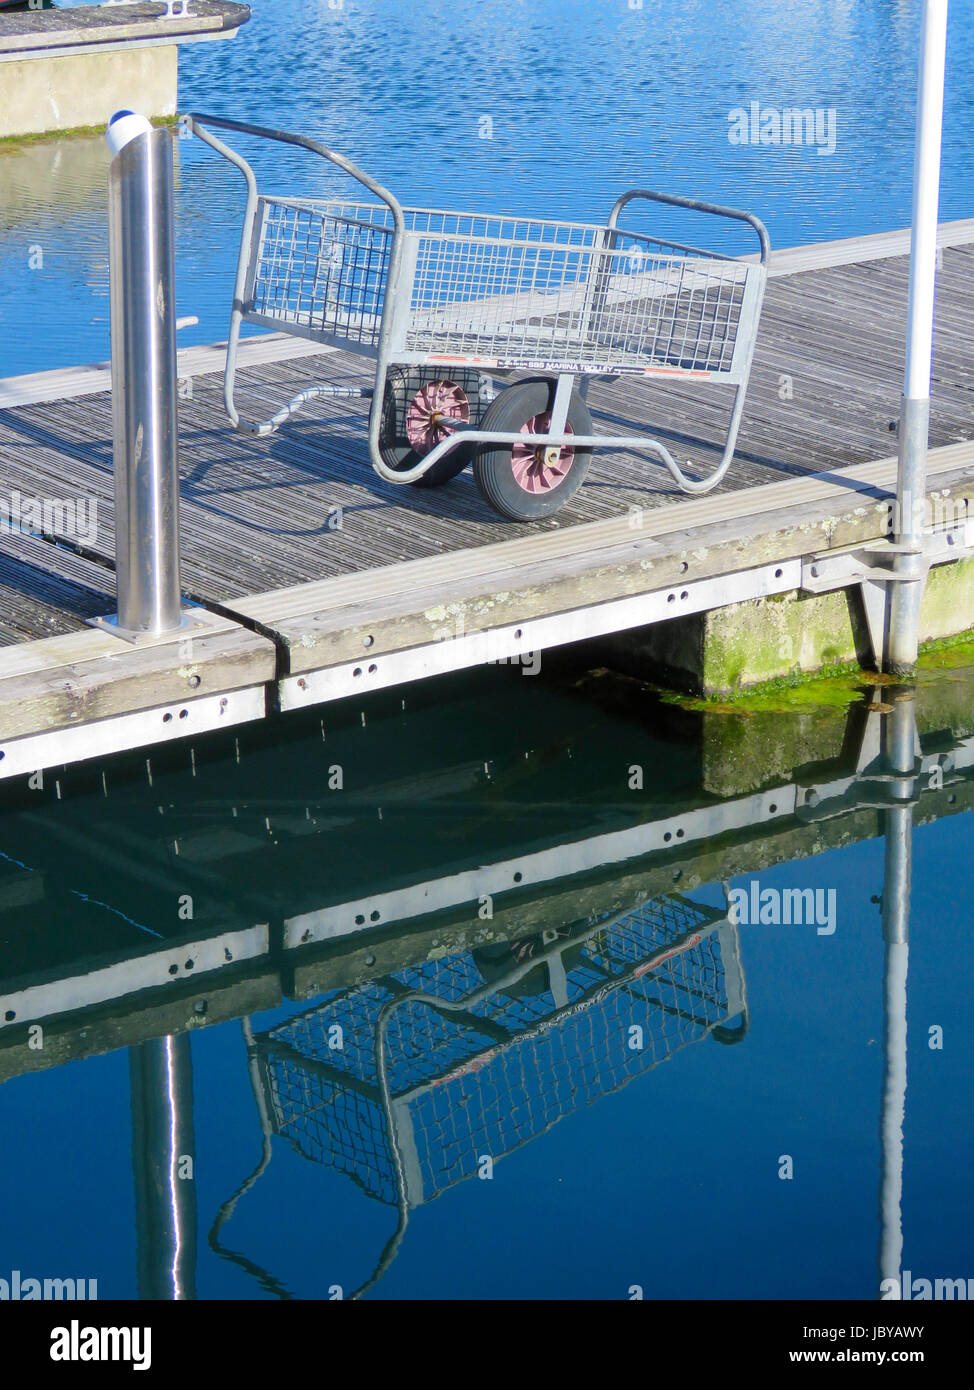 Carro de metal apoyado sobre pontón flotante en marina con reflejo en las aguas azules del mar, Sutton Harbour Marina, La Barbacana, Plymouth, Devon, Inglaterra. Foto de stock